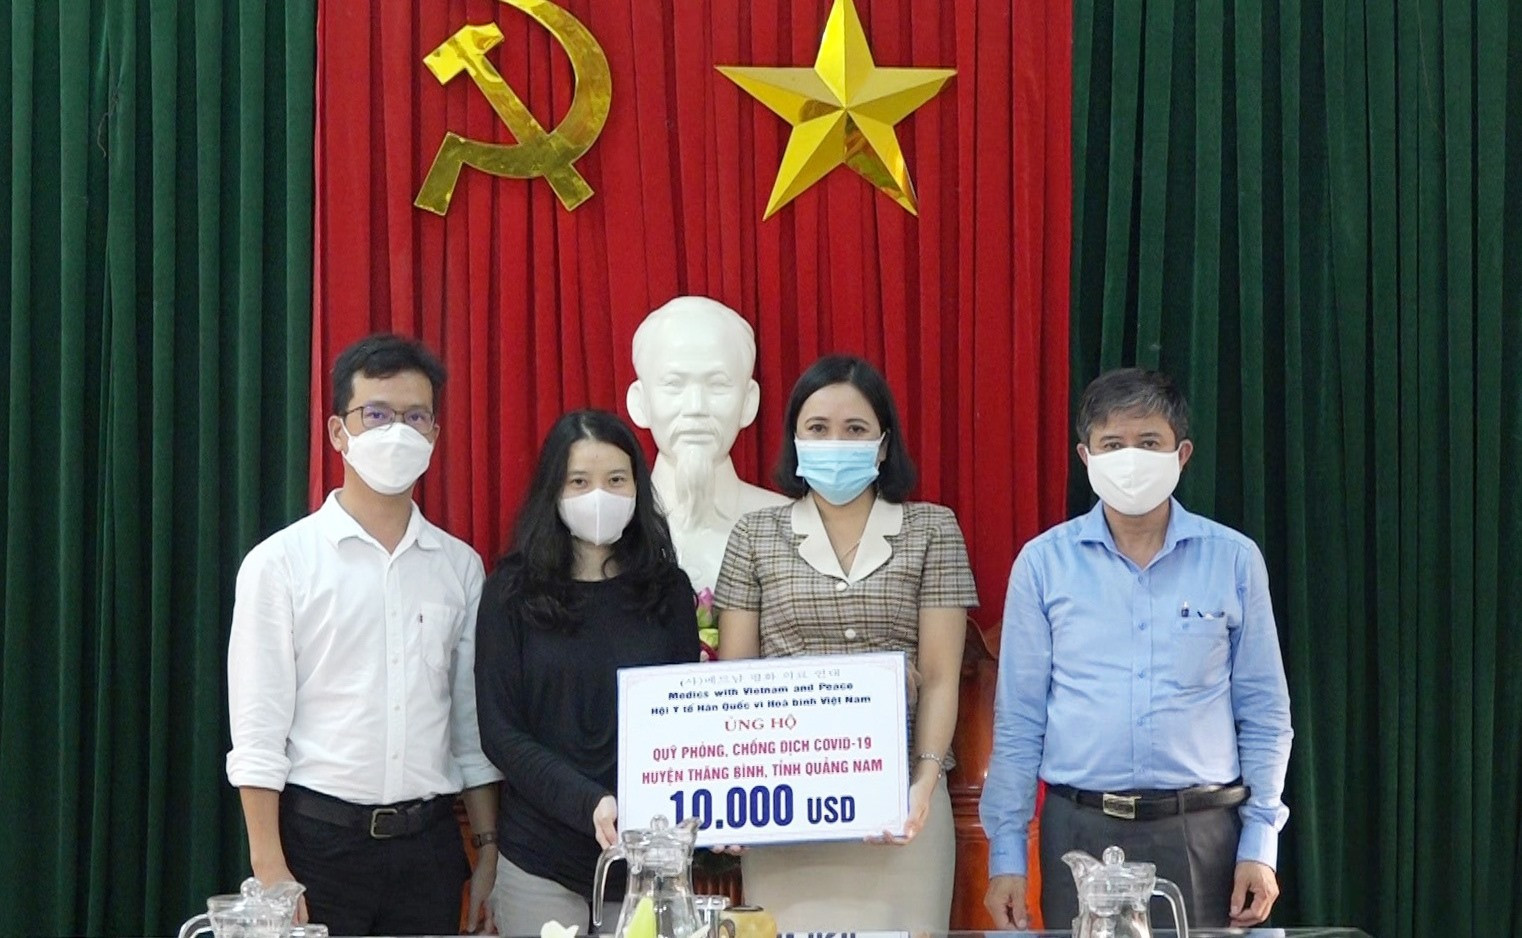 Bà Phan Thị Nhi – Chủ tịch Ủy ban MTTQ Việt Nam huyện Thăng Bình (bên phải) tiếp nhận ủng hộ. Ảnh: MINH TÂN